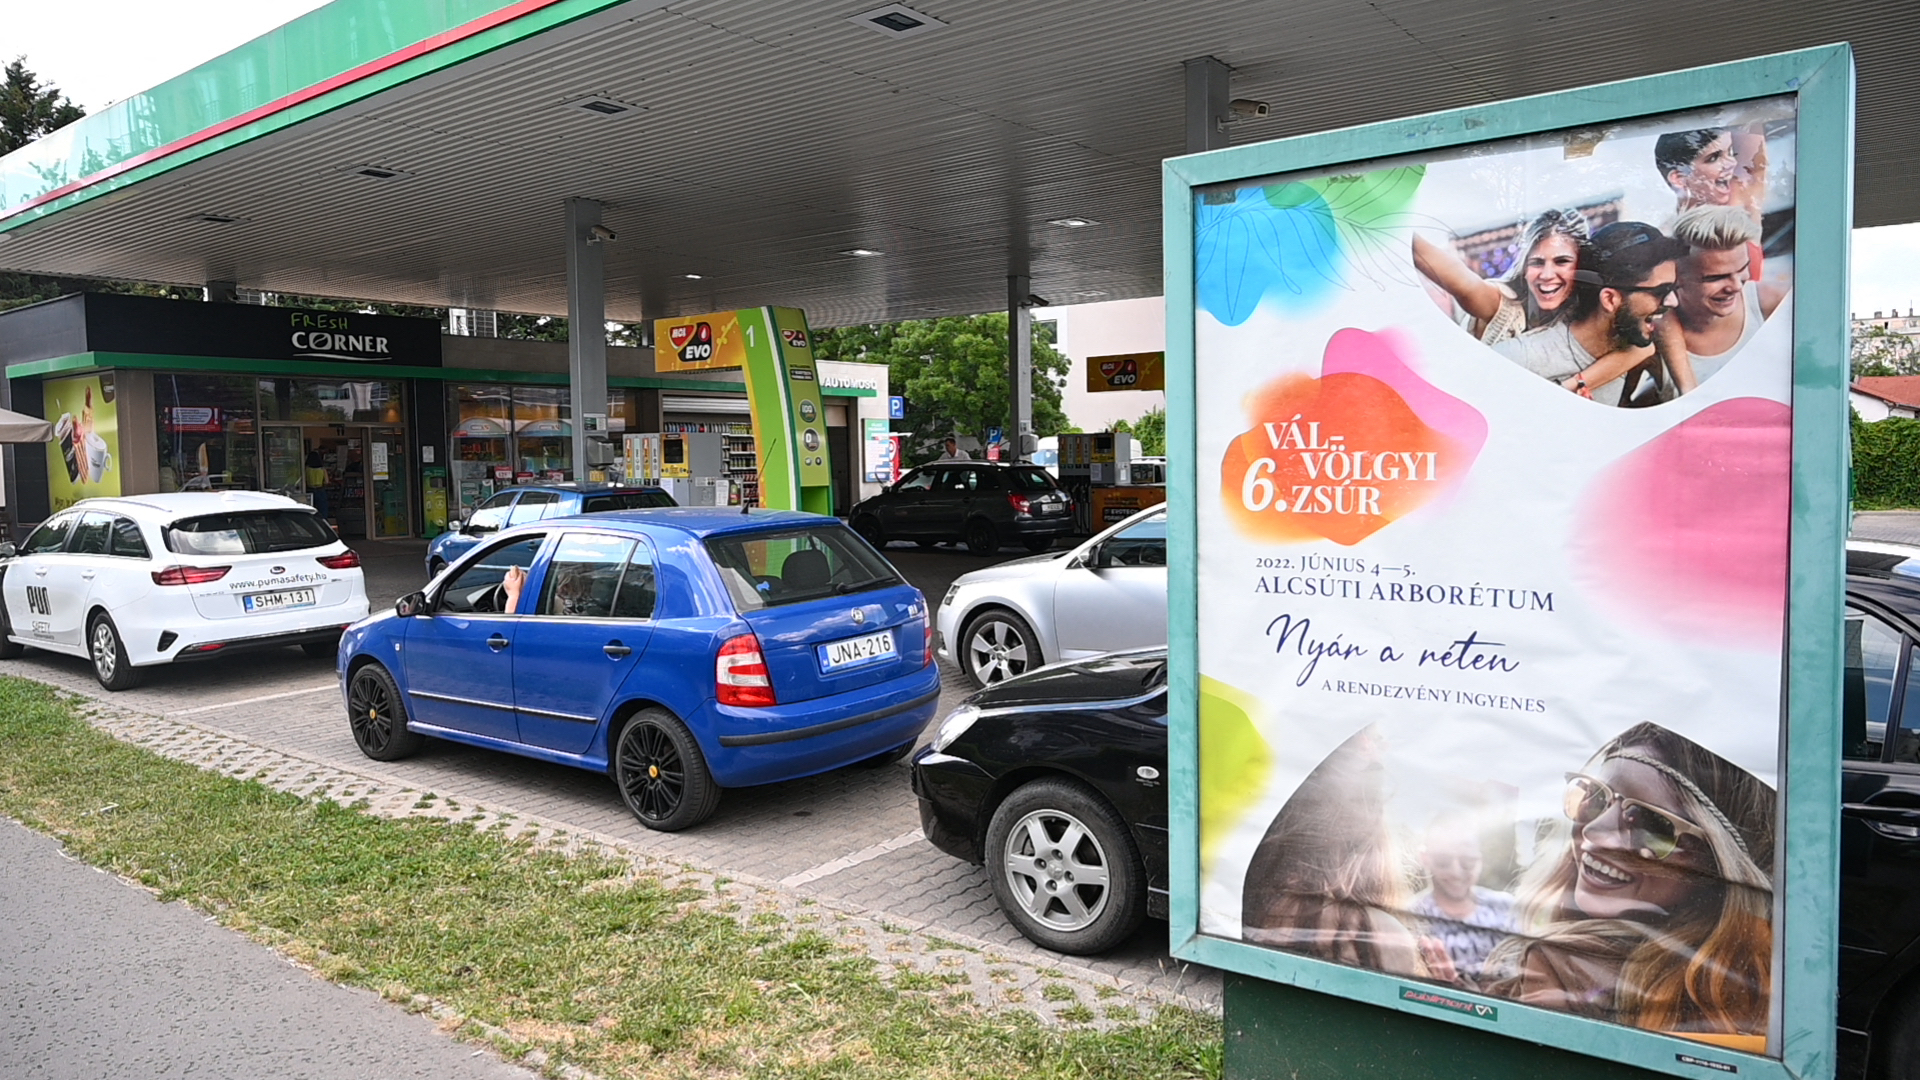 Mașinile stau la coadă la o benzinărie din Budapesta, Ungaria, pe 27 mai, unde mașinile cu numere maghiare pot cumpăra combustibil la prețuri stabilite de guvern, în timp ce mașinile cu numere străine plătesc prețuri de piață. 